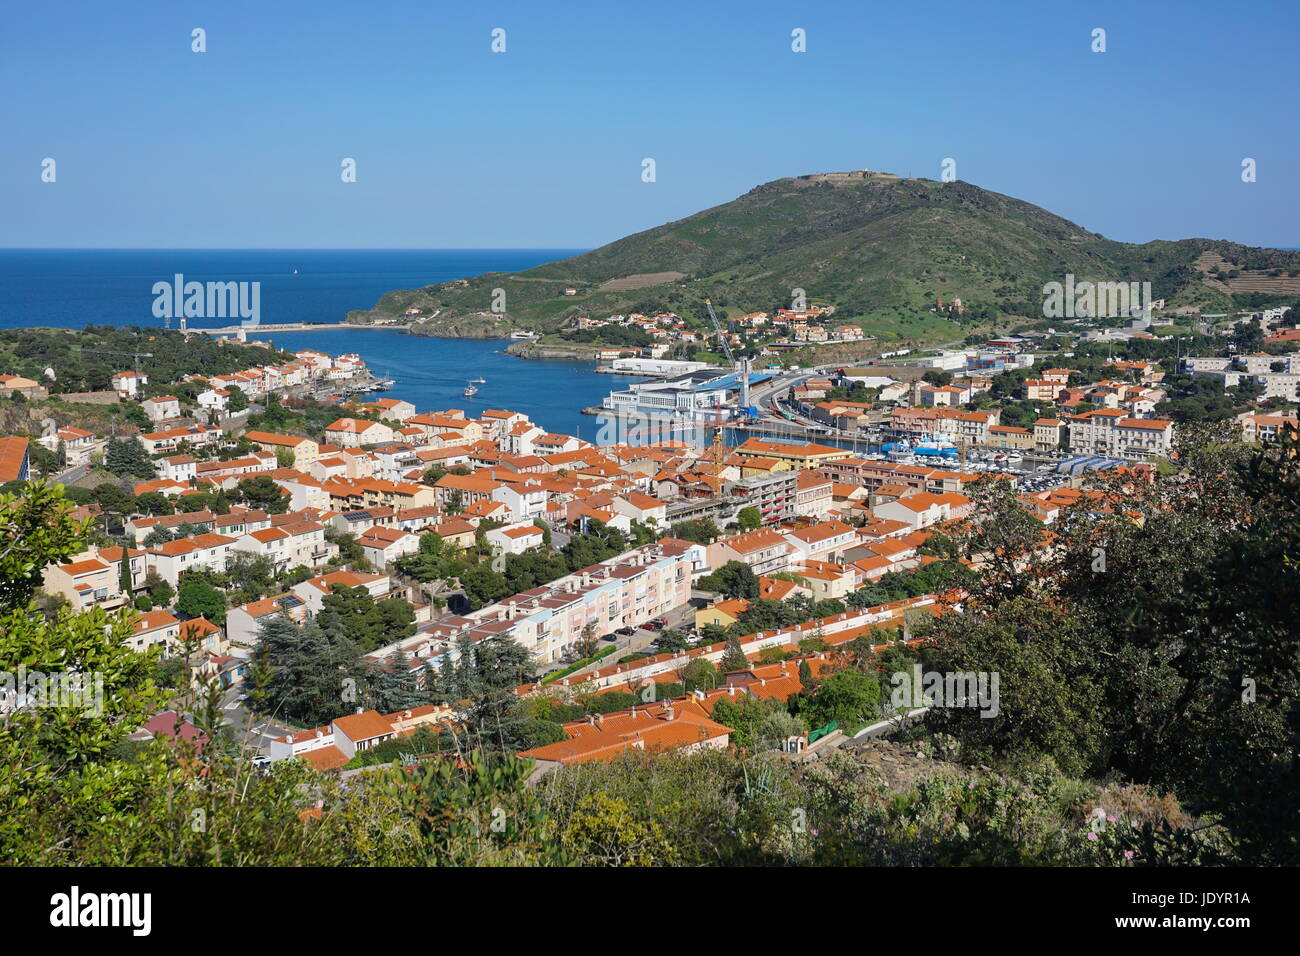 La ciudad costera de Port Vendres, con su puerto y el fuerte de tener antecedentes, Mar Mediterráneo, Roussillon, Pirineos Orientales, al sur de Francia Foto de stock